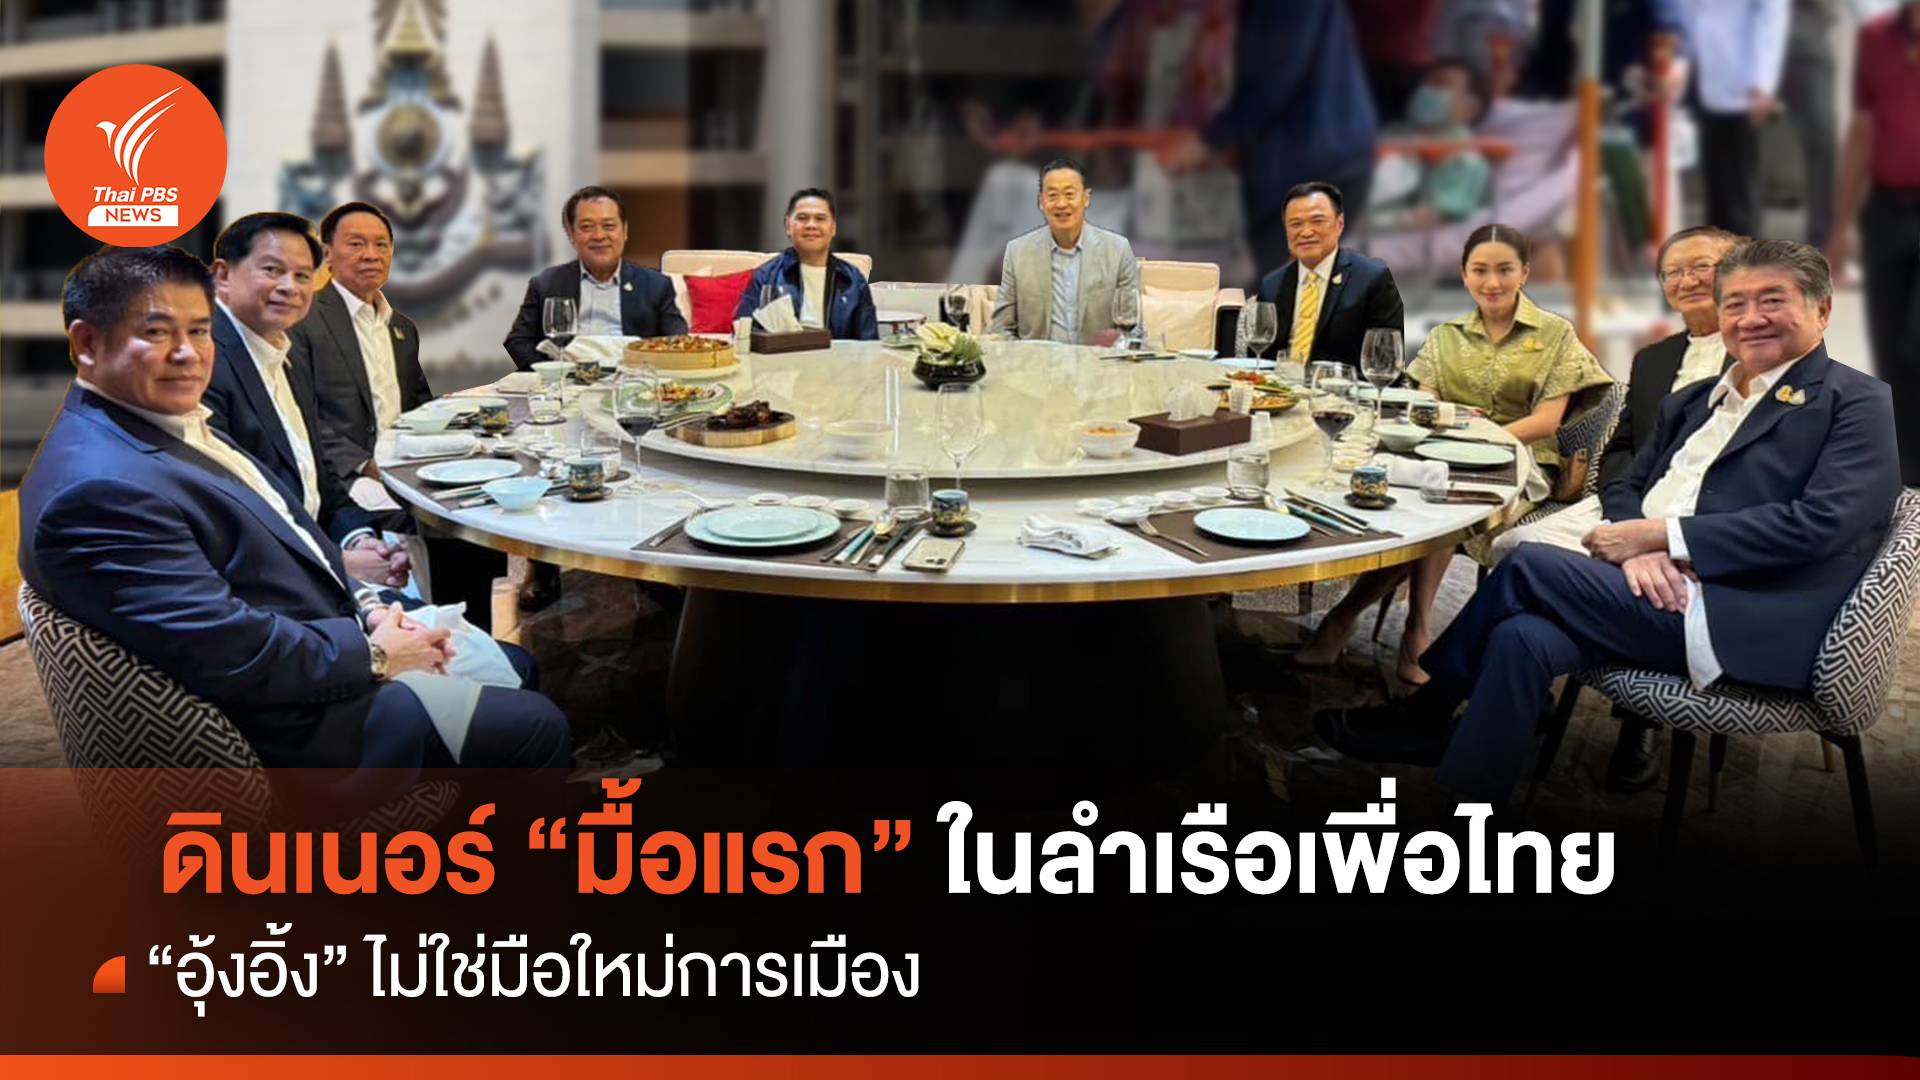 ดินเนอร์ "มื้อแรก" ในลำเรือเพื่อไทย "อุ๊งอิ๊ง" ไม่ใช่มือใหม่การเมือง